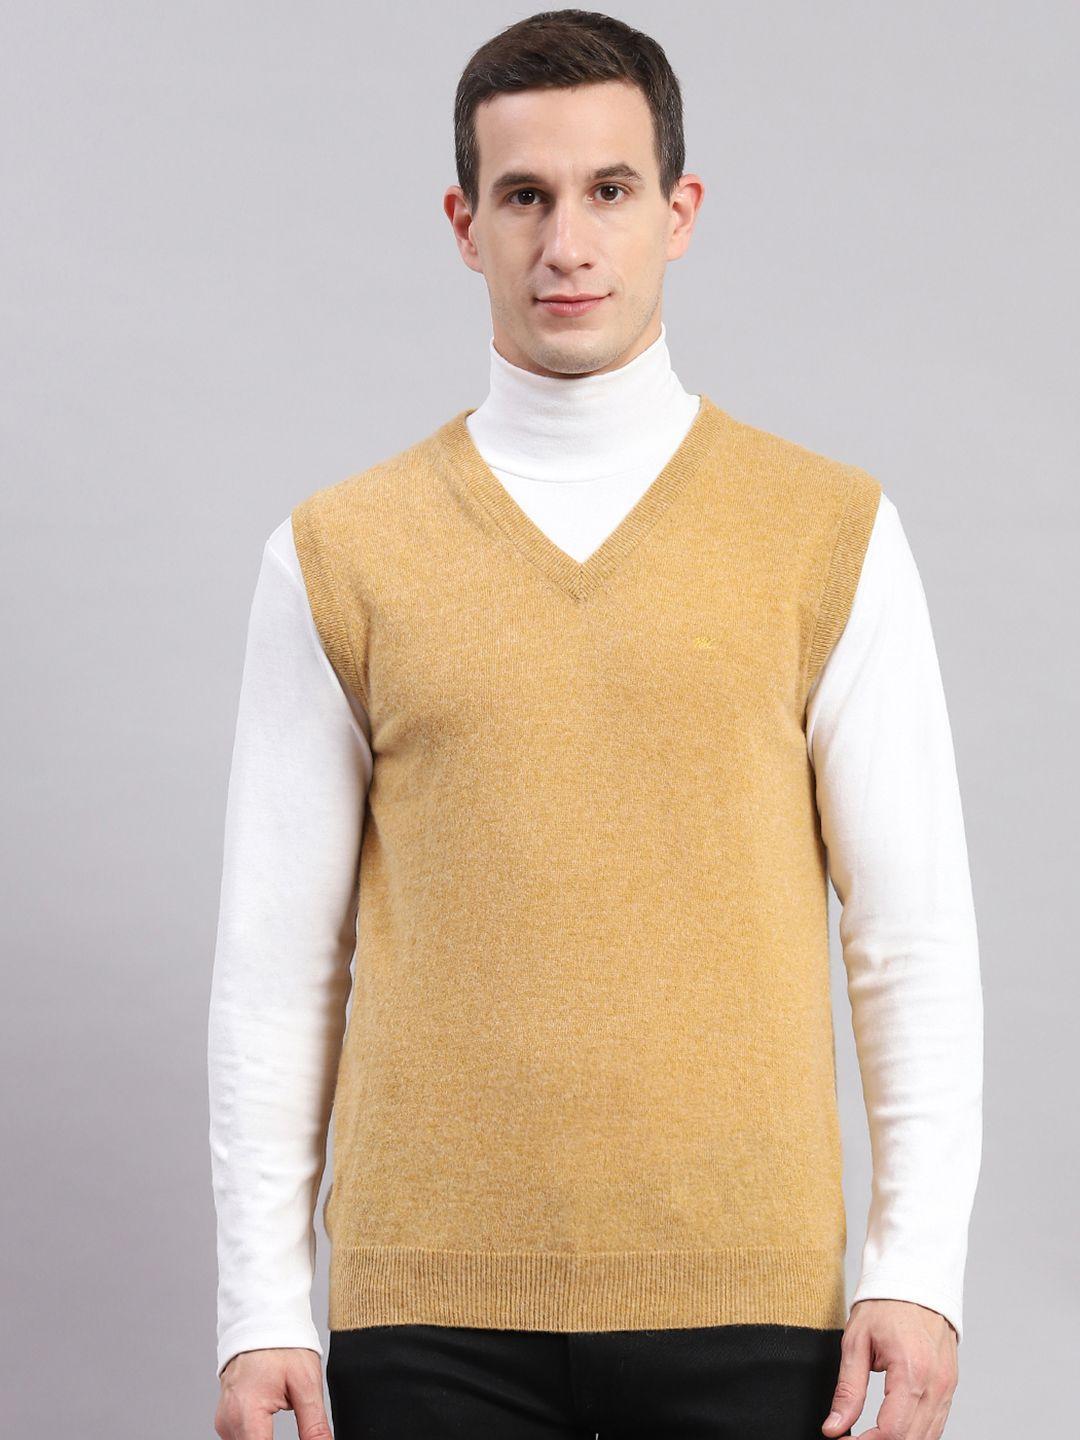 monte carlo v-neck sweater vest